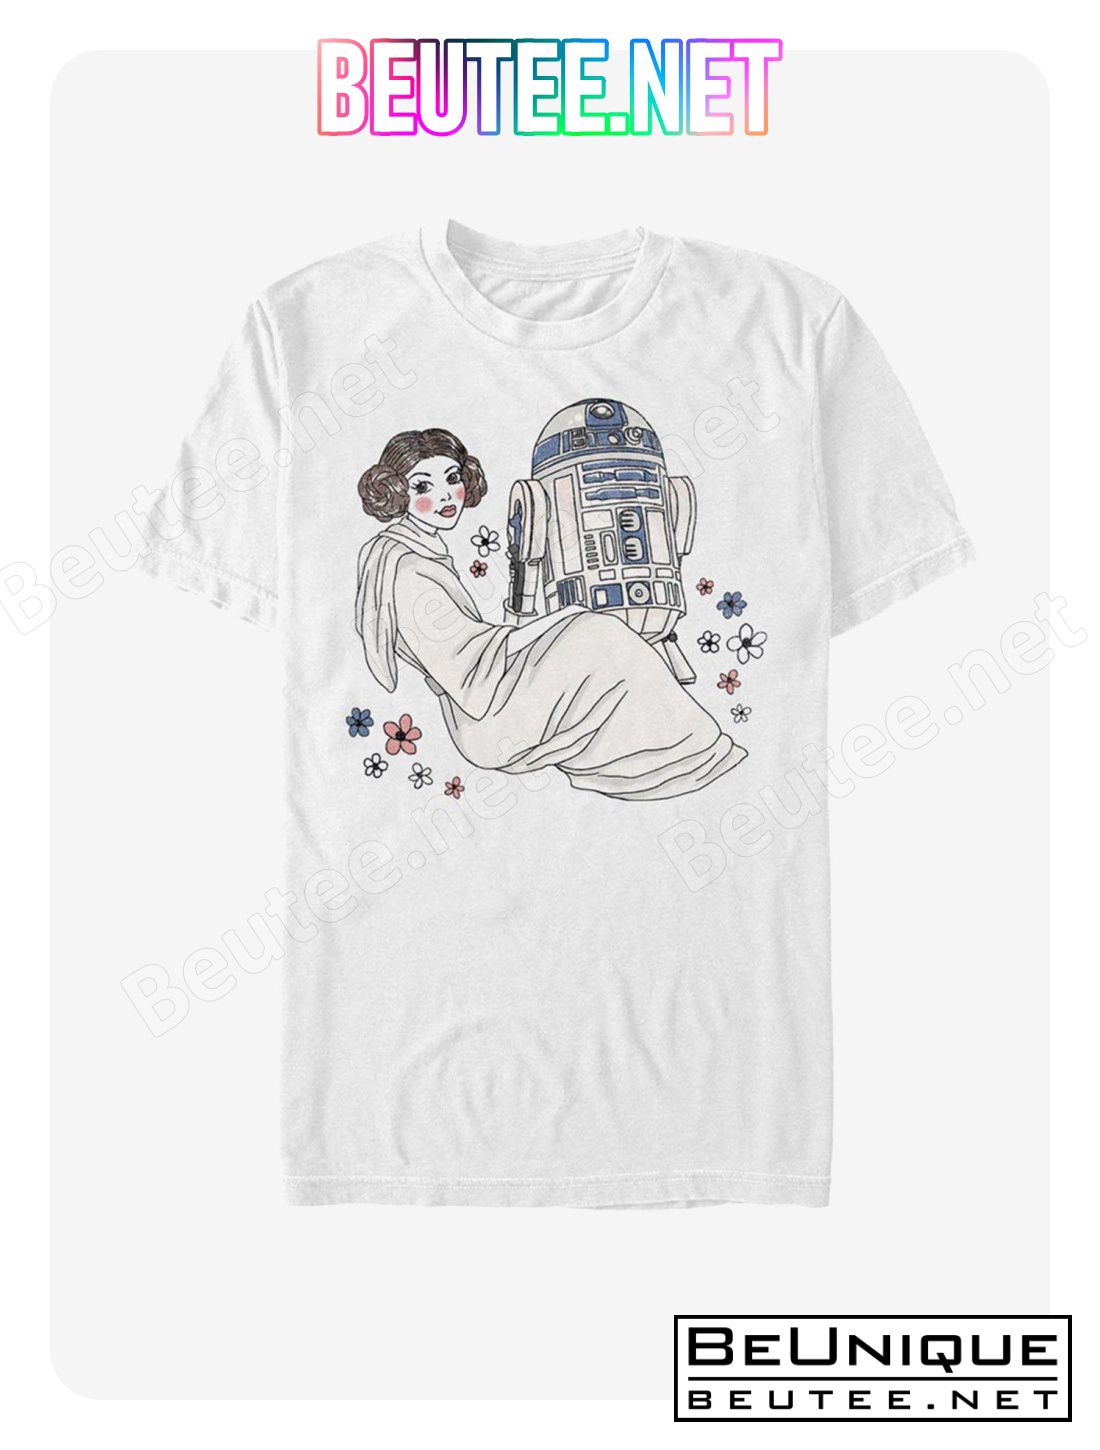 Star Wars Galaxy Friends T-Shirt